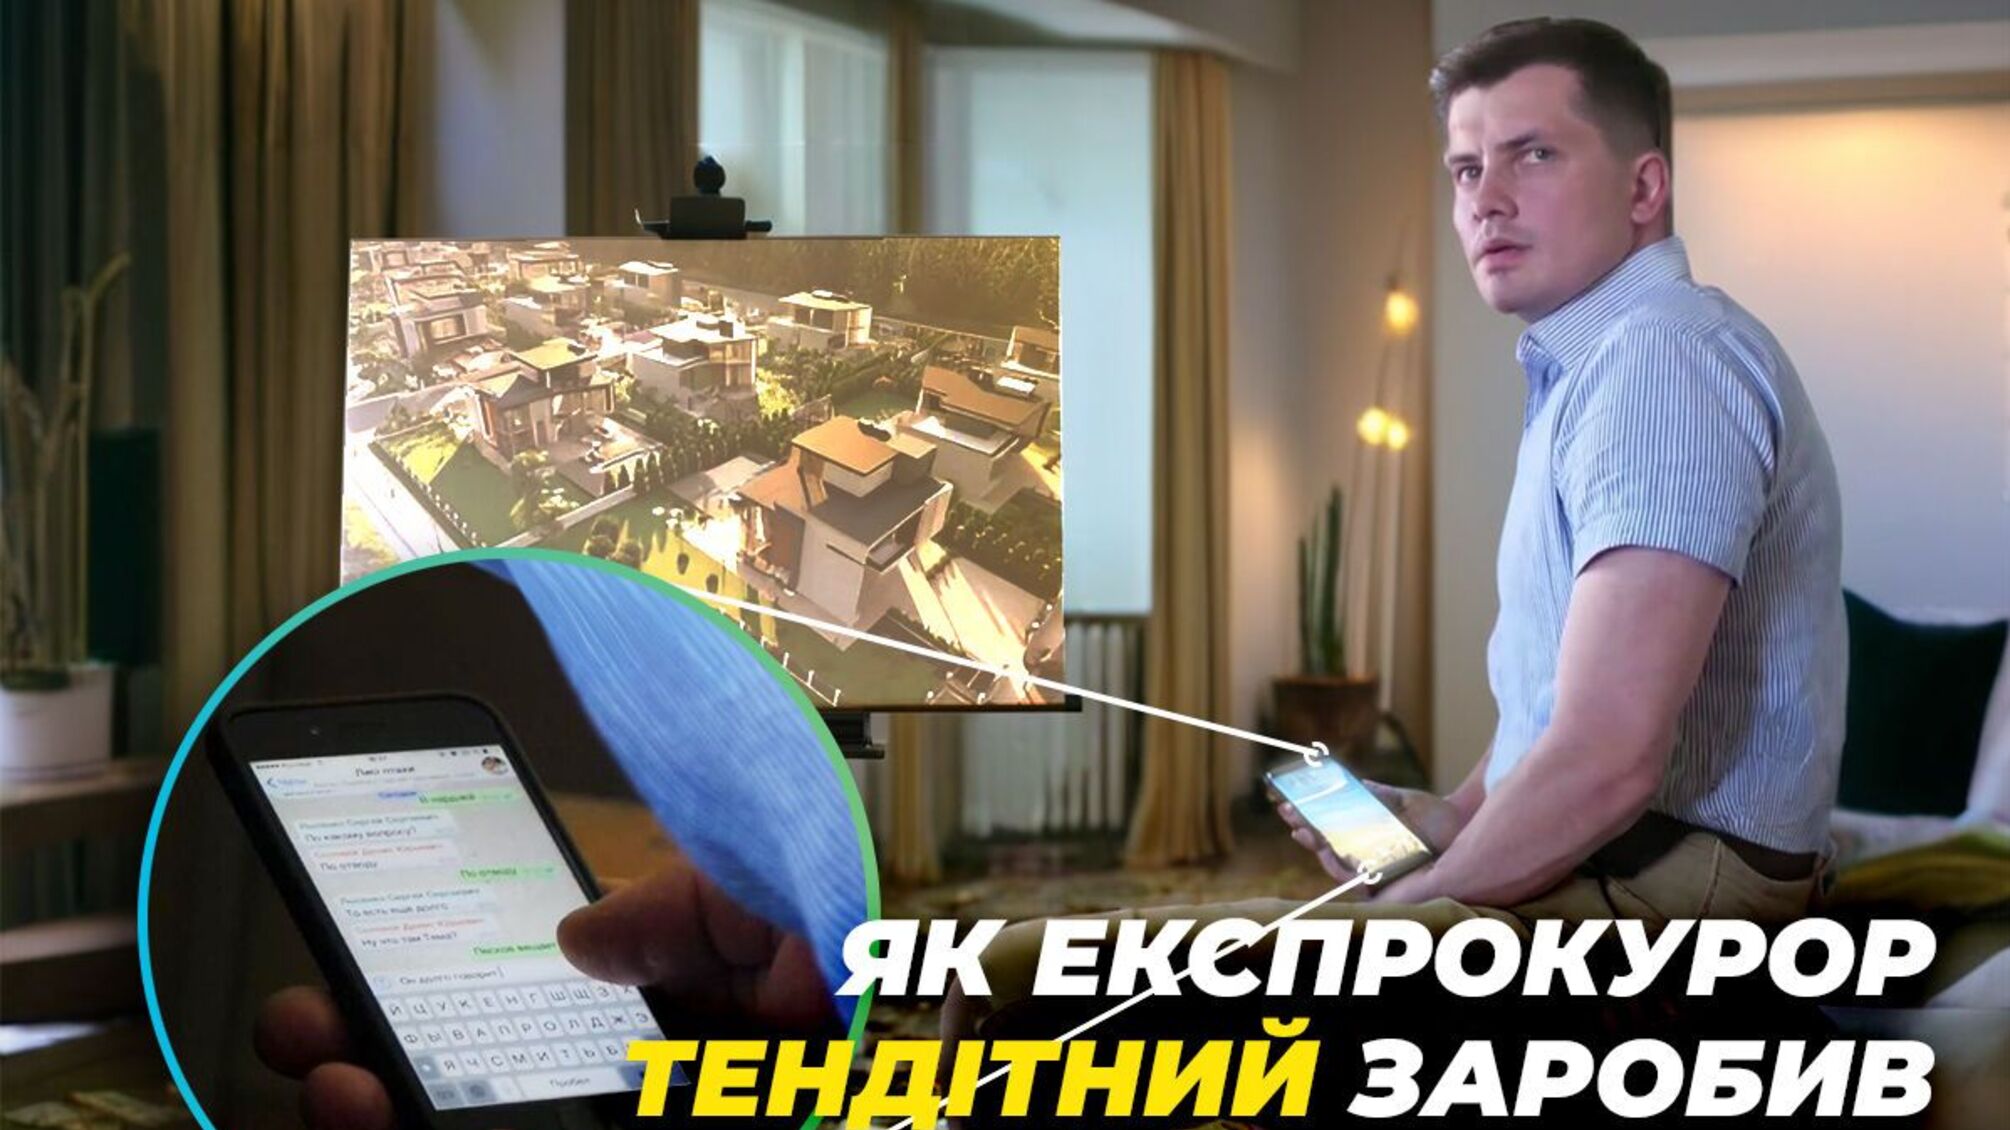 SMS-договорняки и элитные коттеджи под Киевом: как экспрокурор Хрупкий заработал миллионное состояние (обновлено)